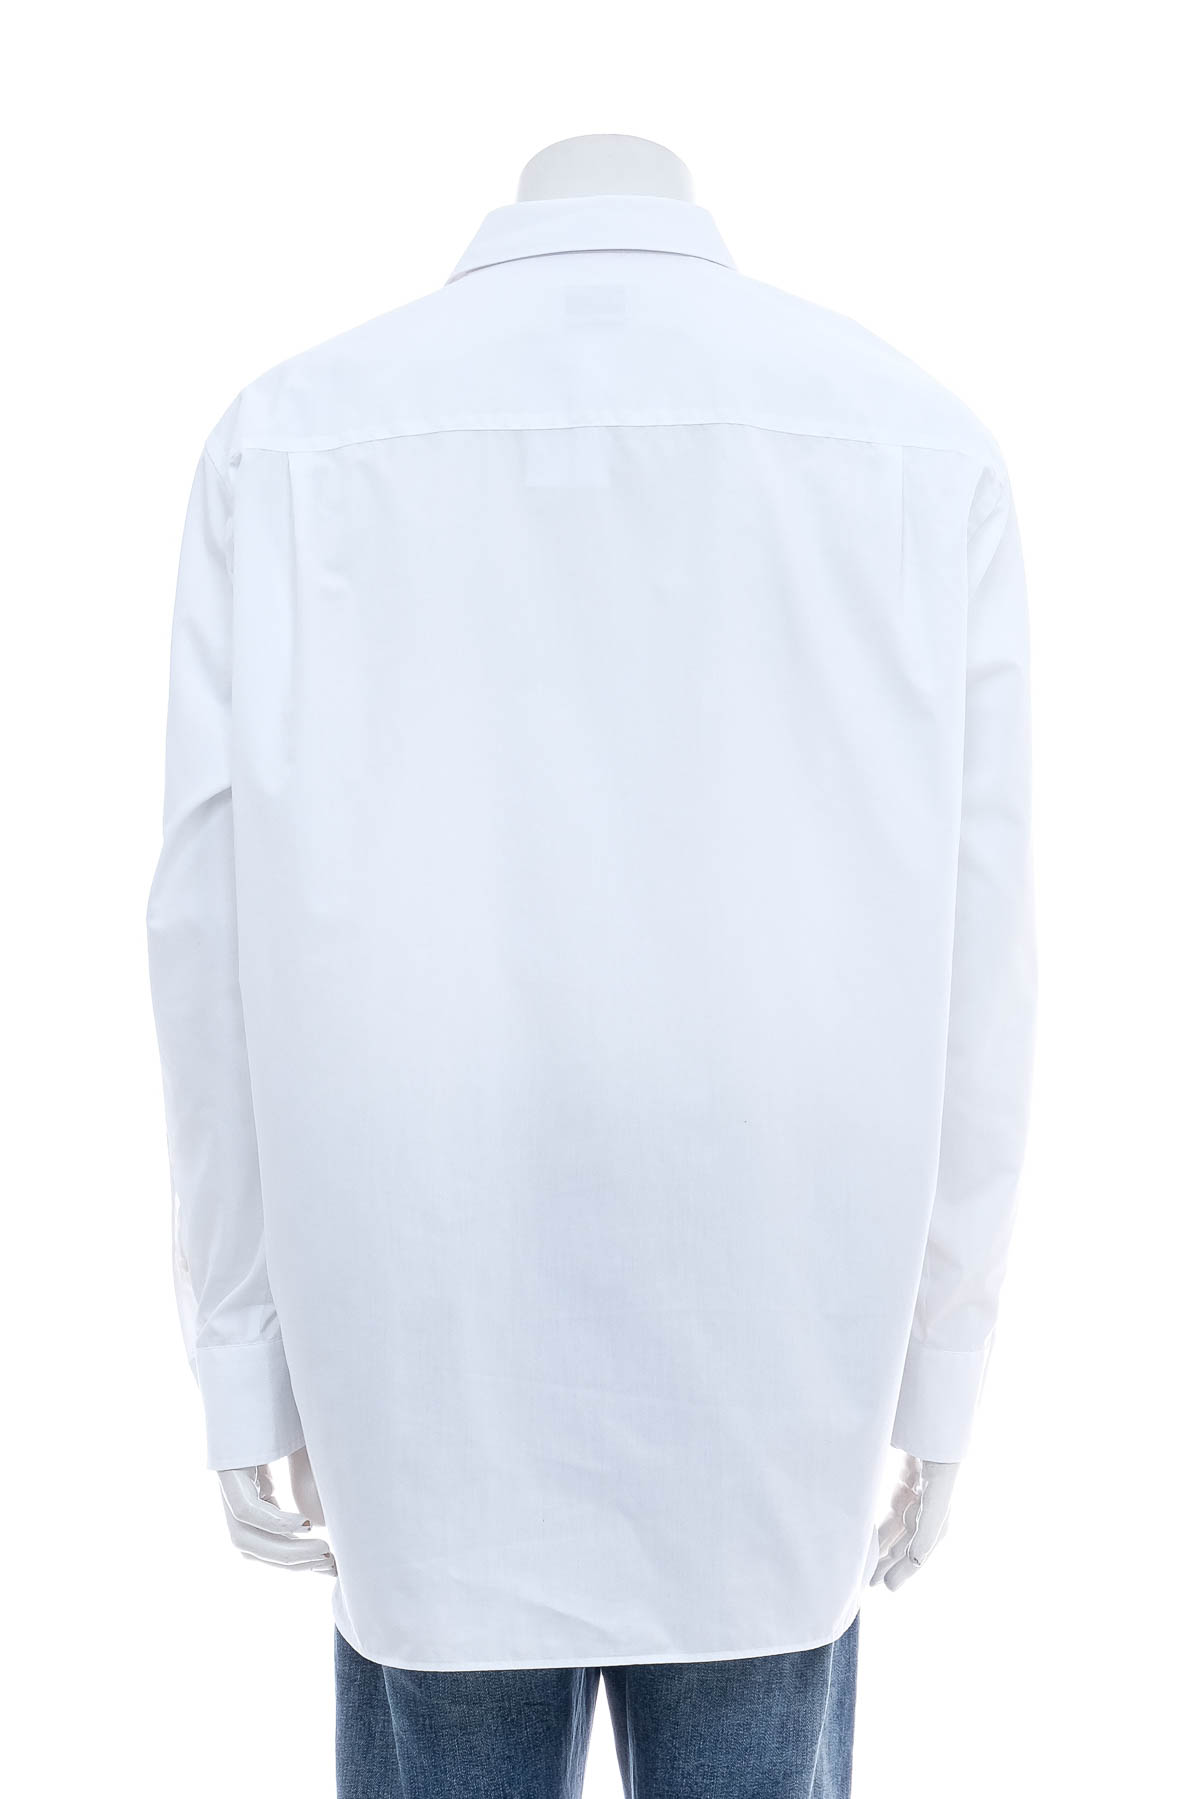 Ανδρικό πουκάμισο - VINCENZO BORETTI - 1